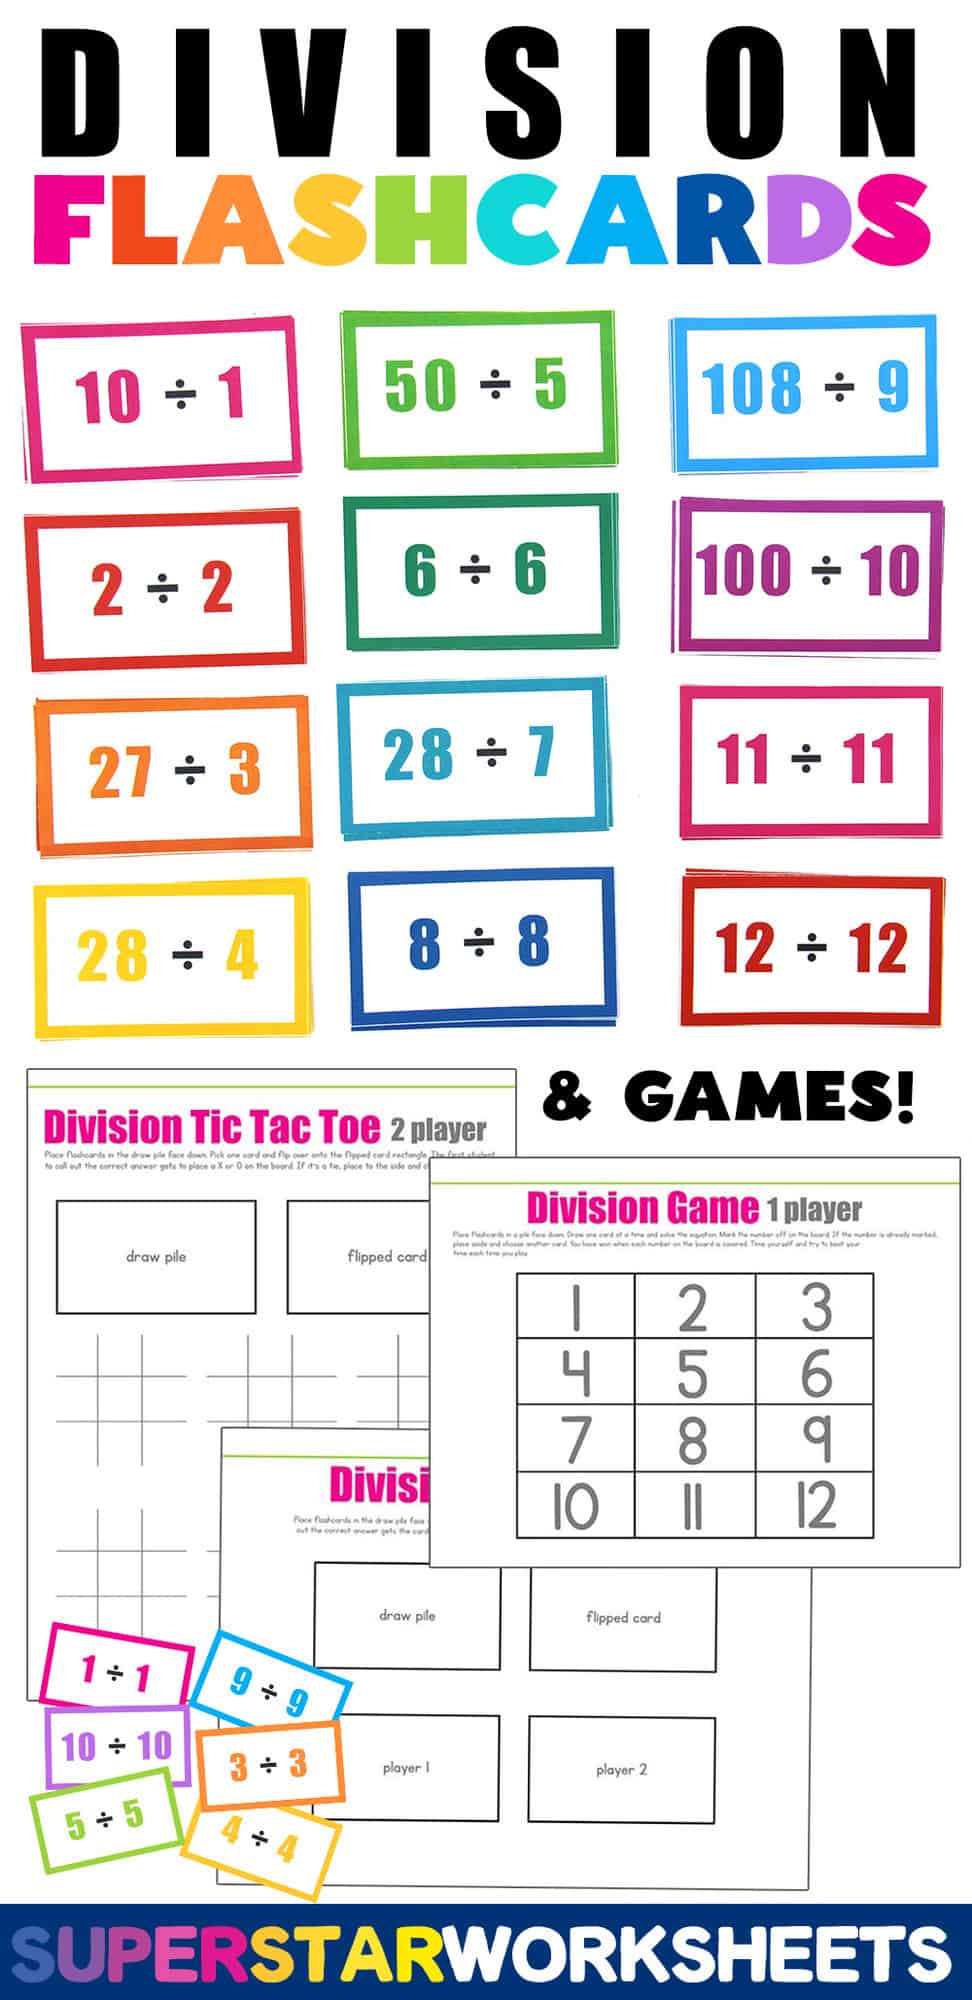 Division Flashcards - Superstar Worksheets